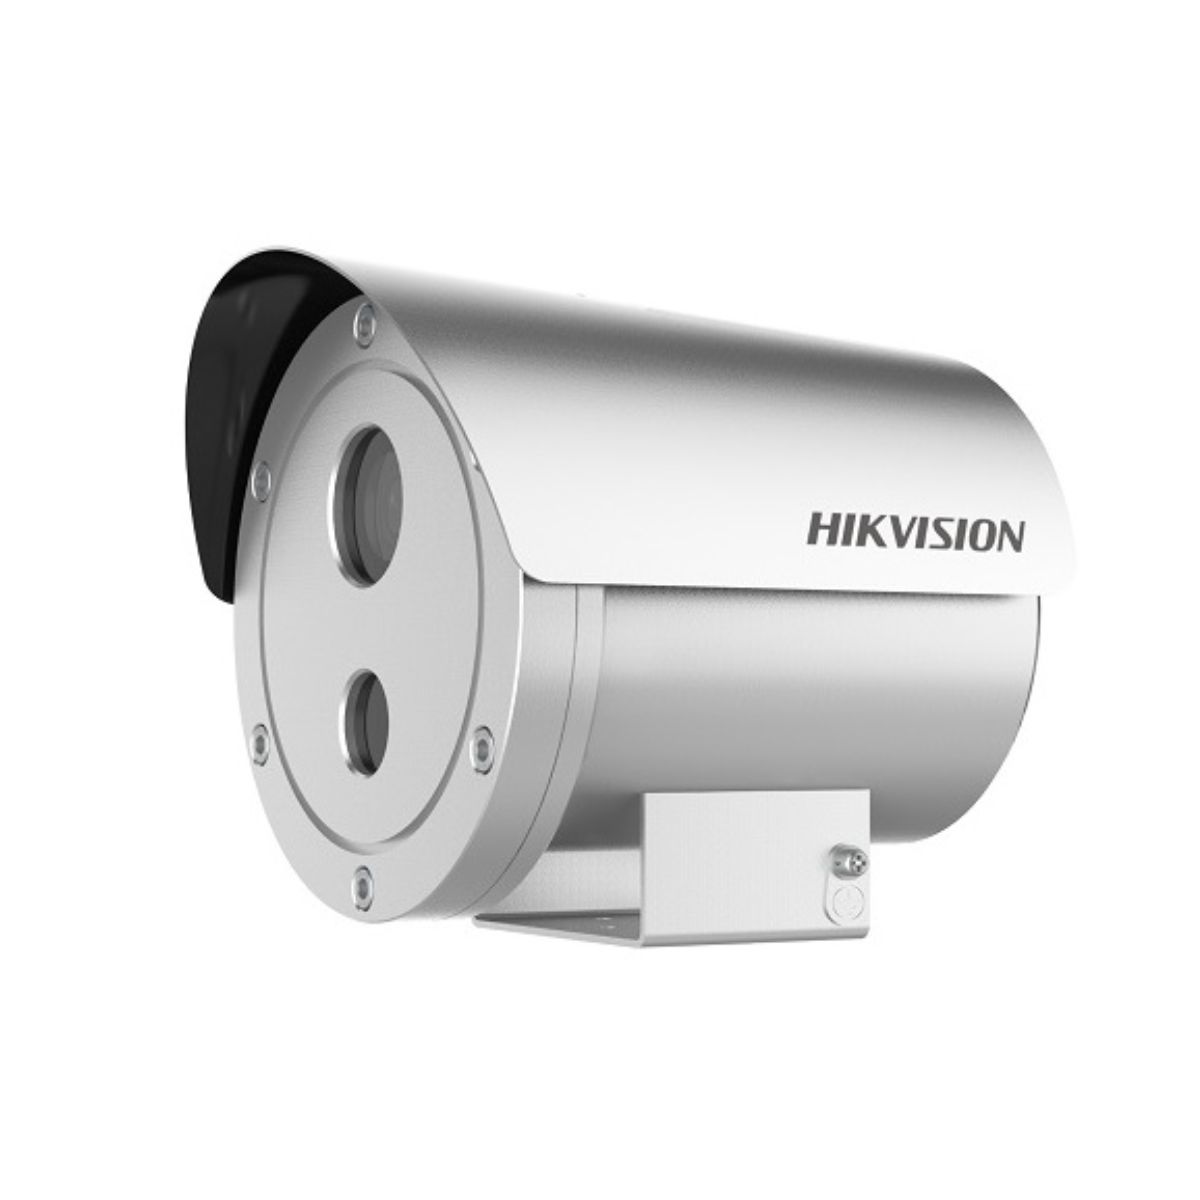 Camera IP chống cháy nổ Hikvision DS-2XE6222F-IS/316L 2MP, hồng ngoại 30m, chống ngược sáng WDR 120dB